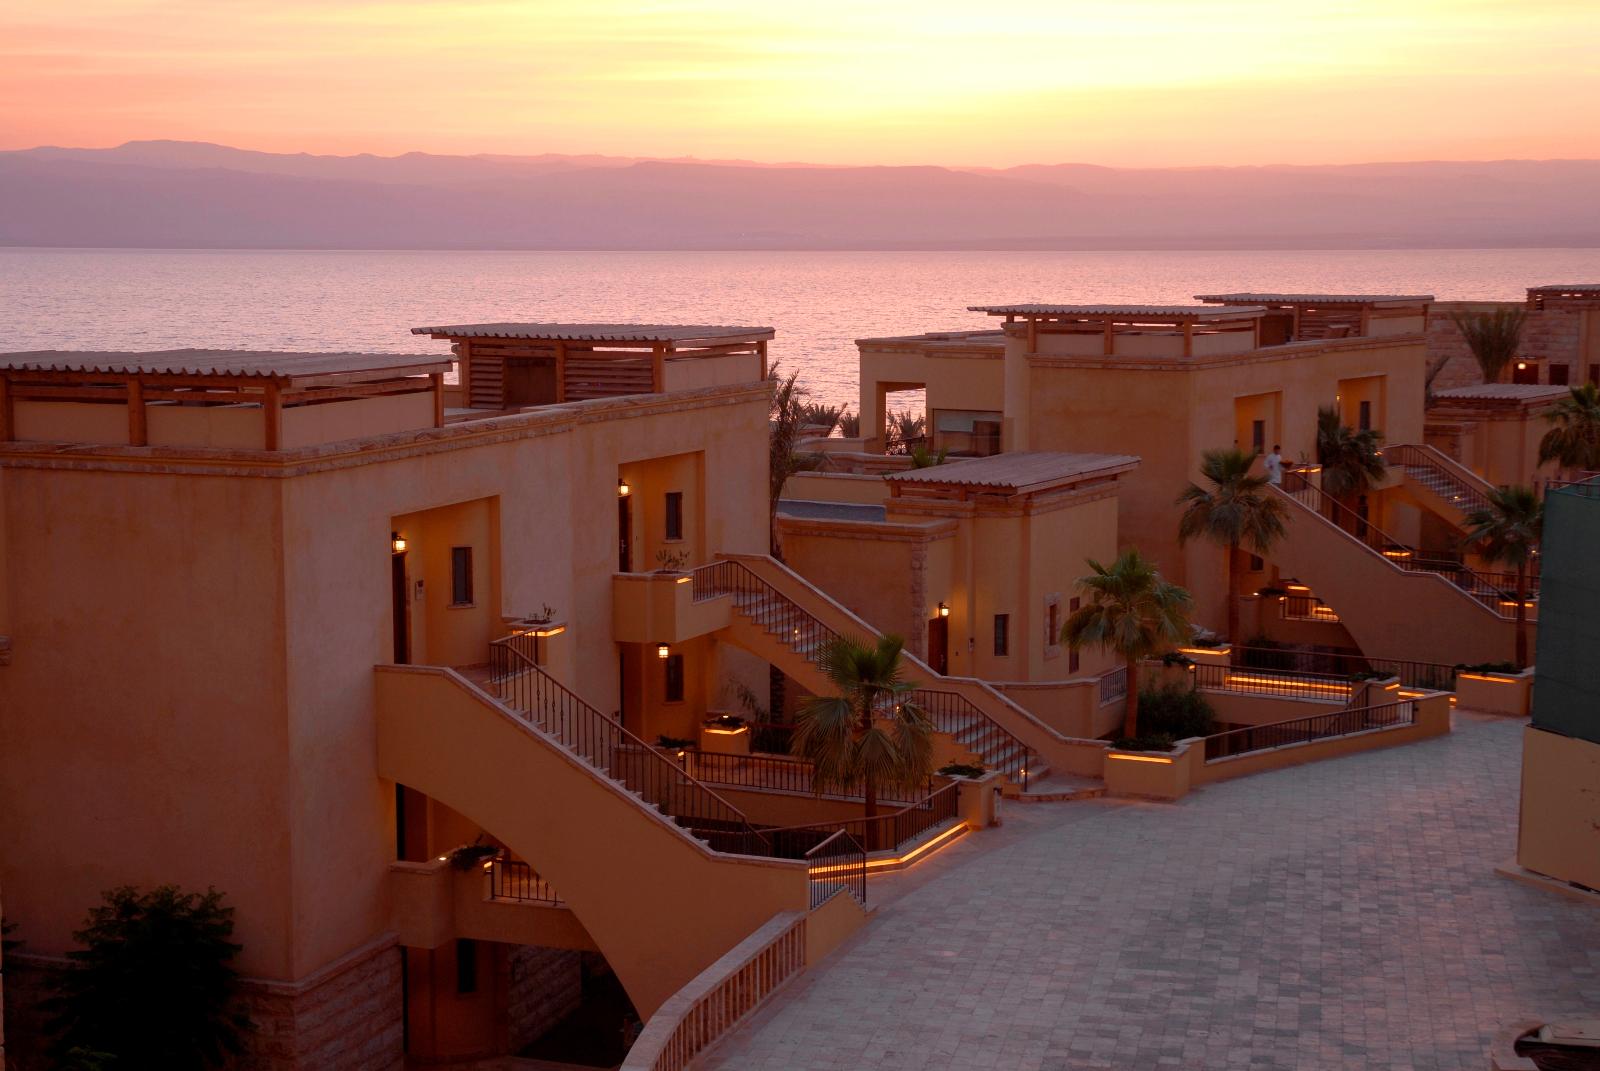 Villas at Dusk - Kempinski Hotel Ishtar Dead Sea